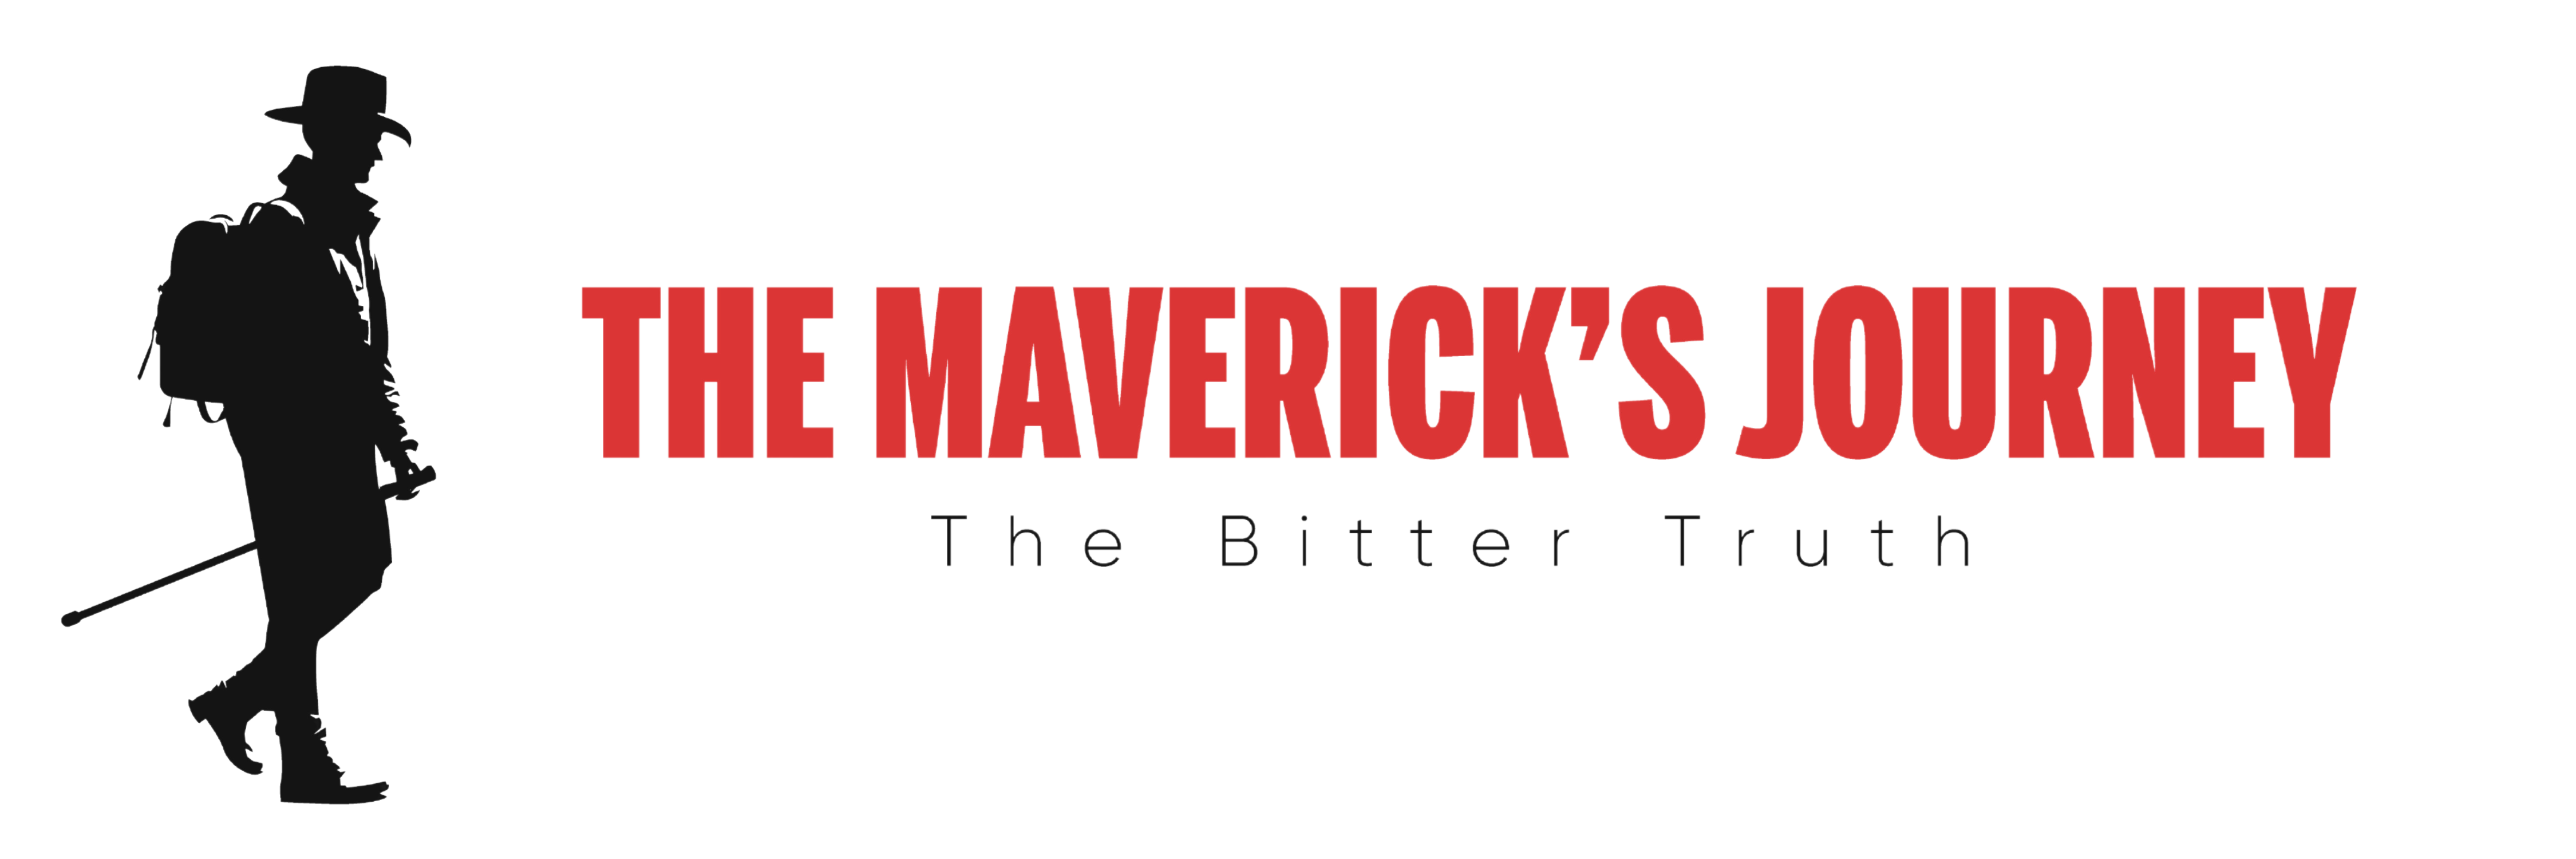 The Maverick's Journey